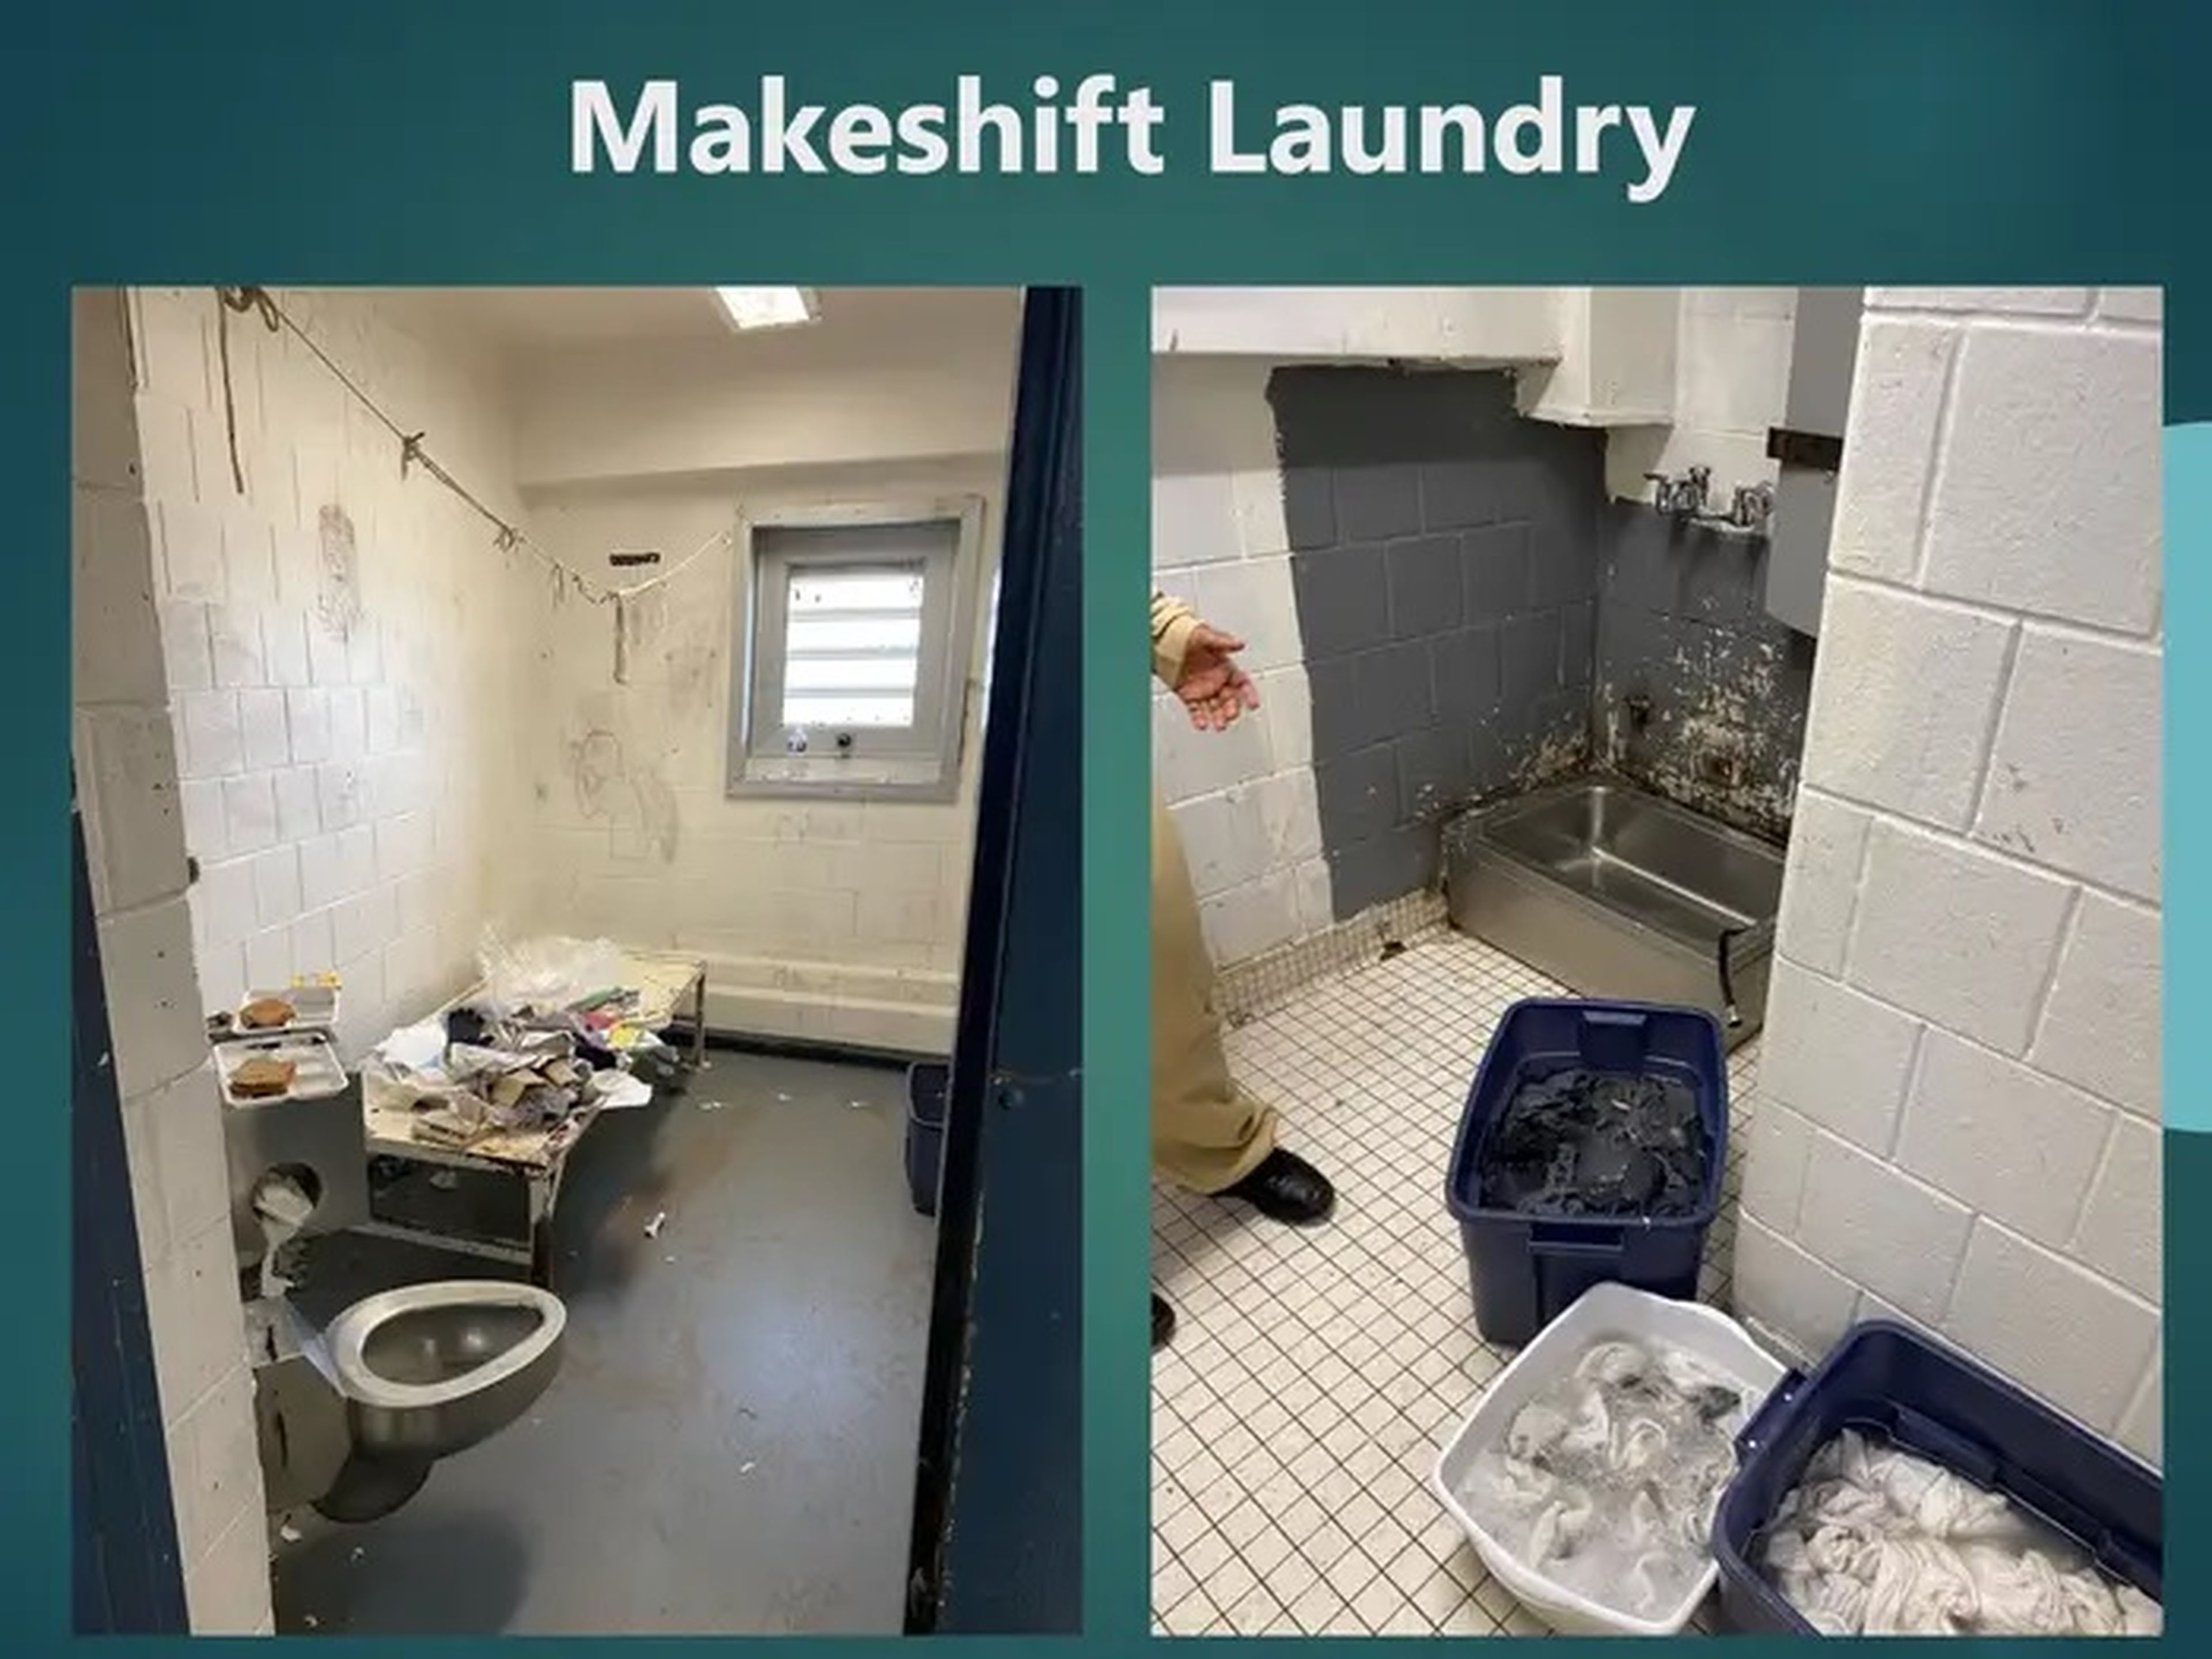 'Lavandería improvisada'. La prisión de Rikers Island en Nueva York es famosa por sus malas condiciones de hacinamiento.